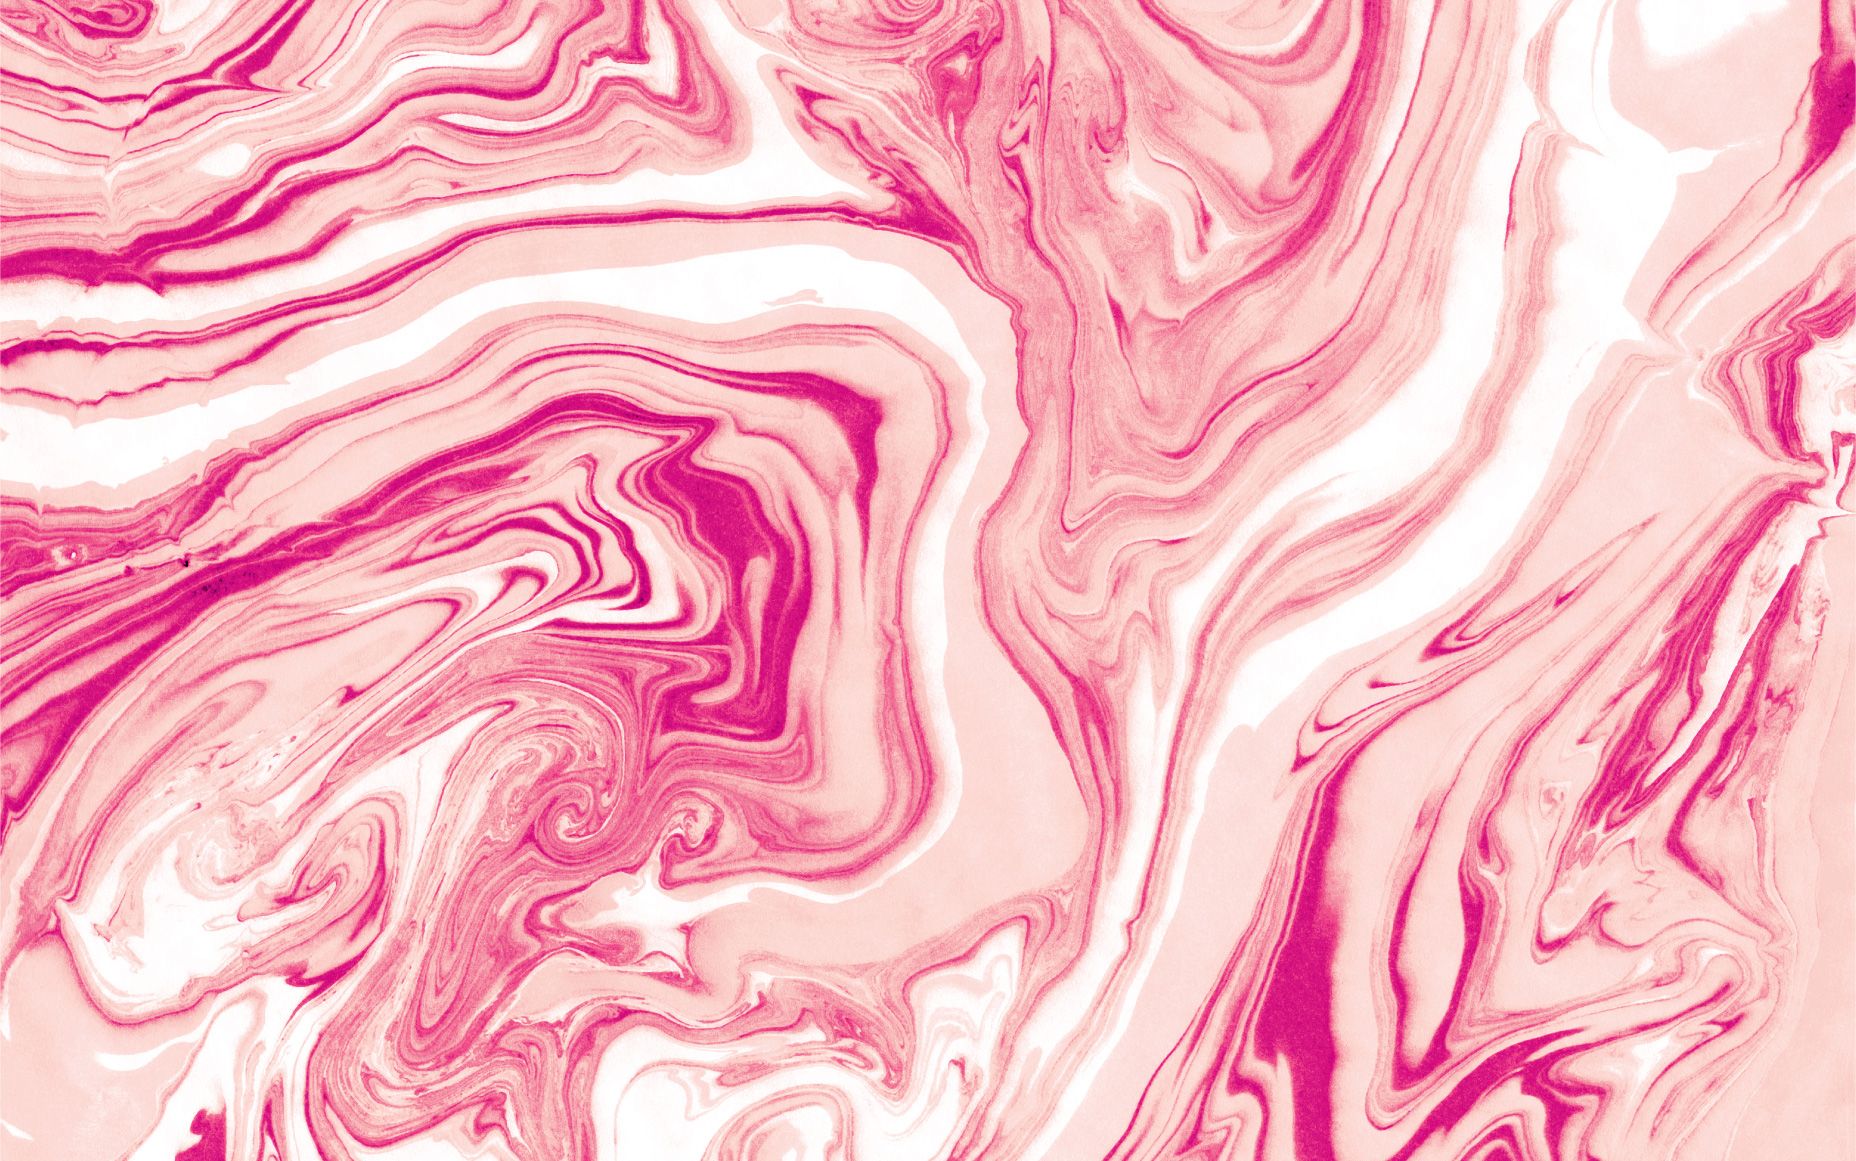 [17+] Pink Marble Wallpapers | WallpaperSafari.com